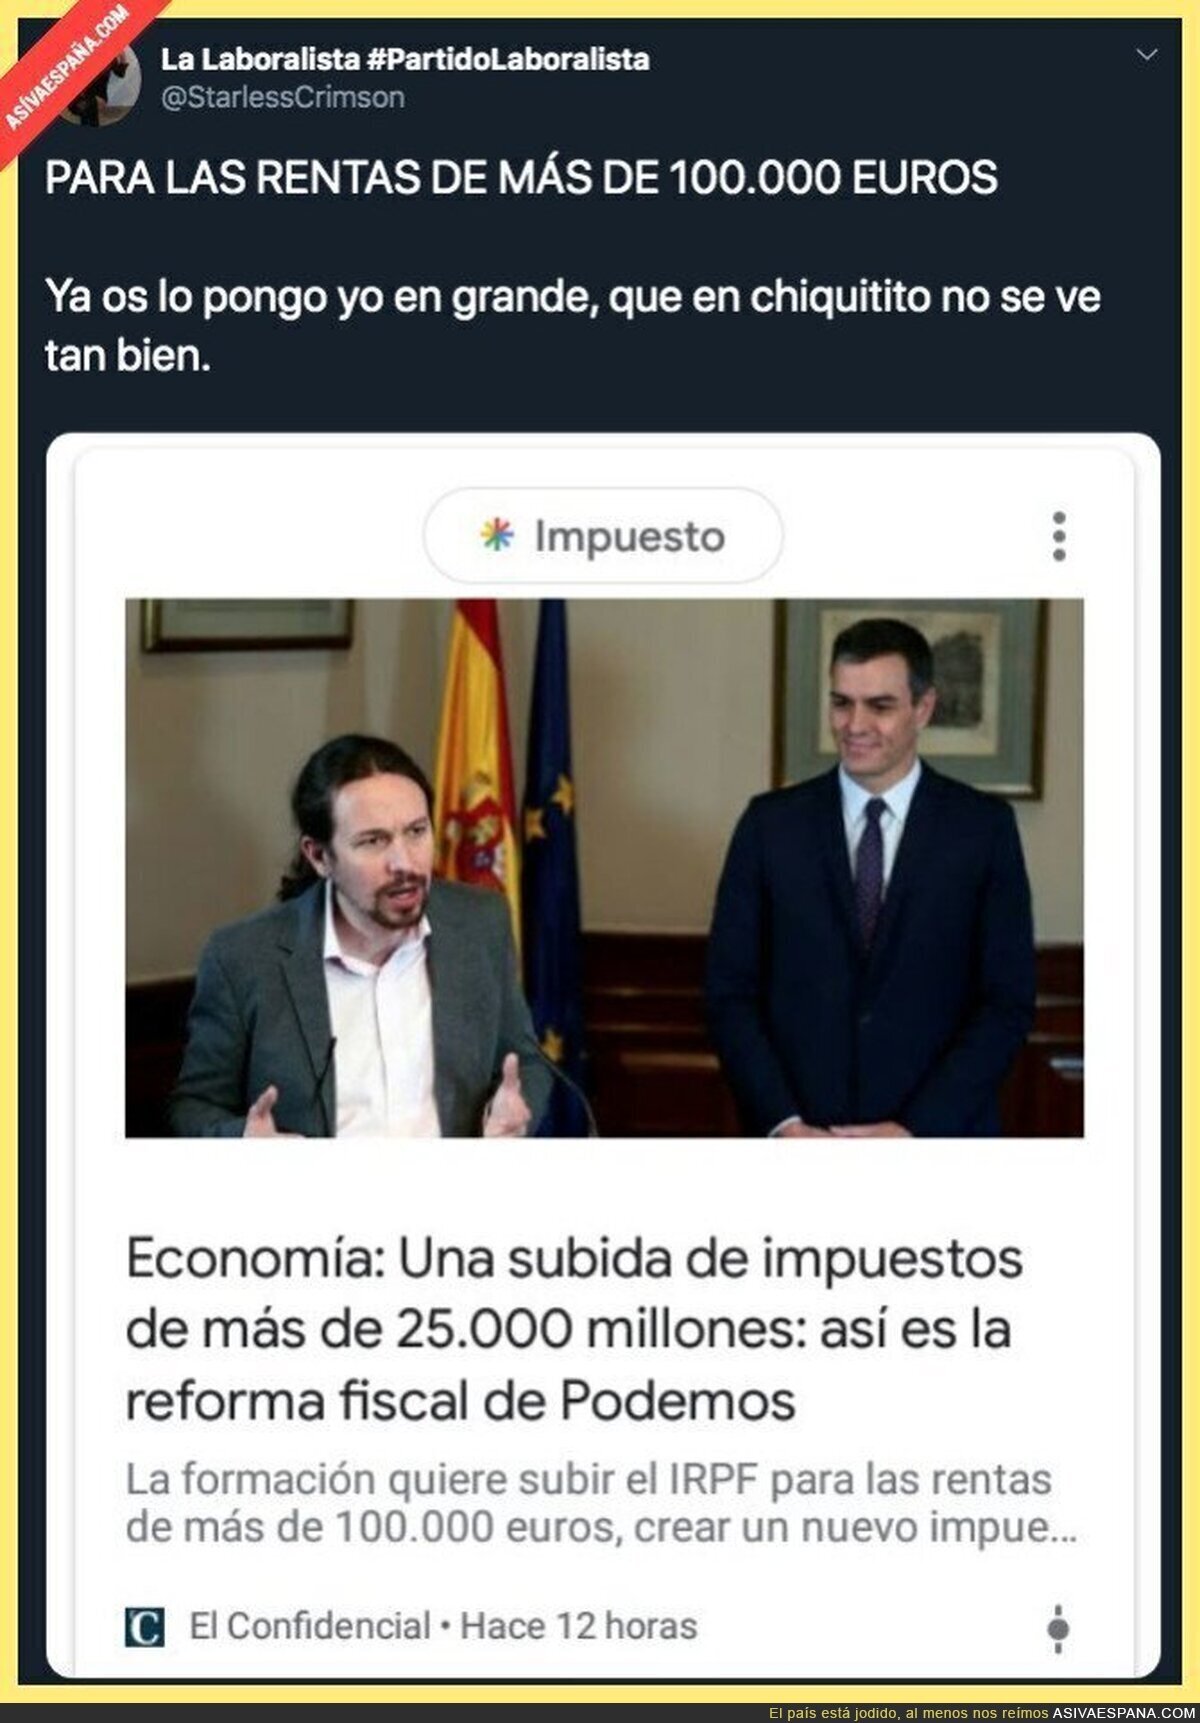 Y habrá obreros que ganan 1000 euros indignados con Podemos